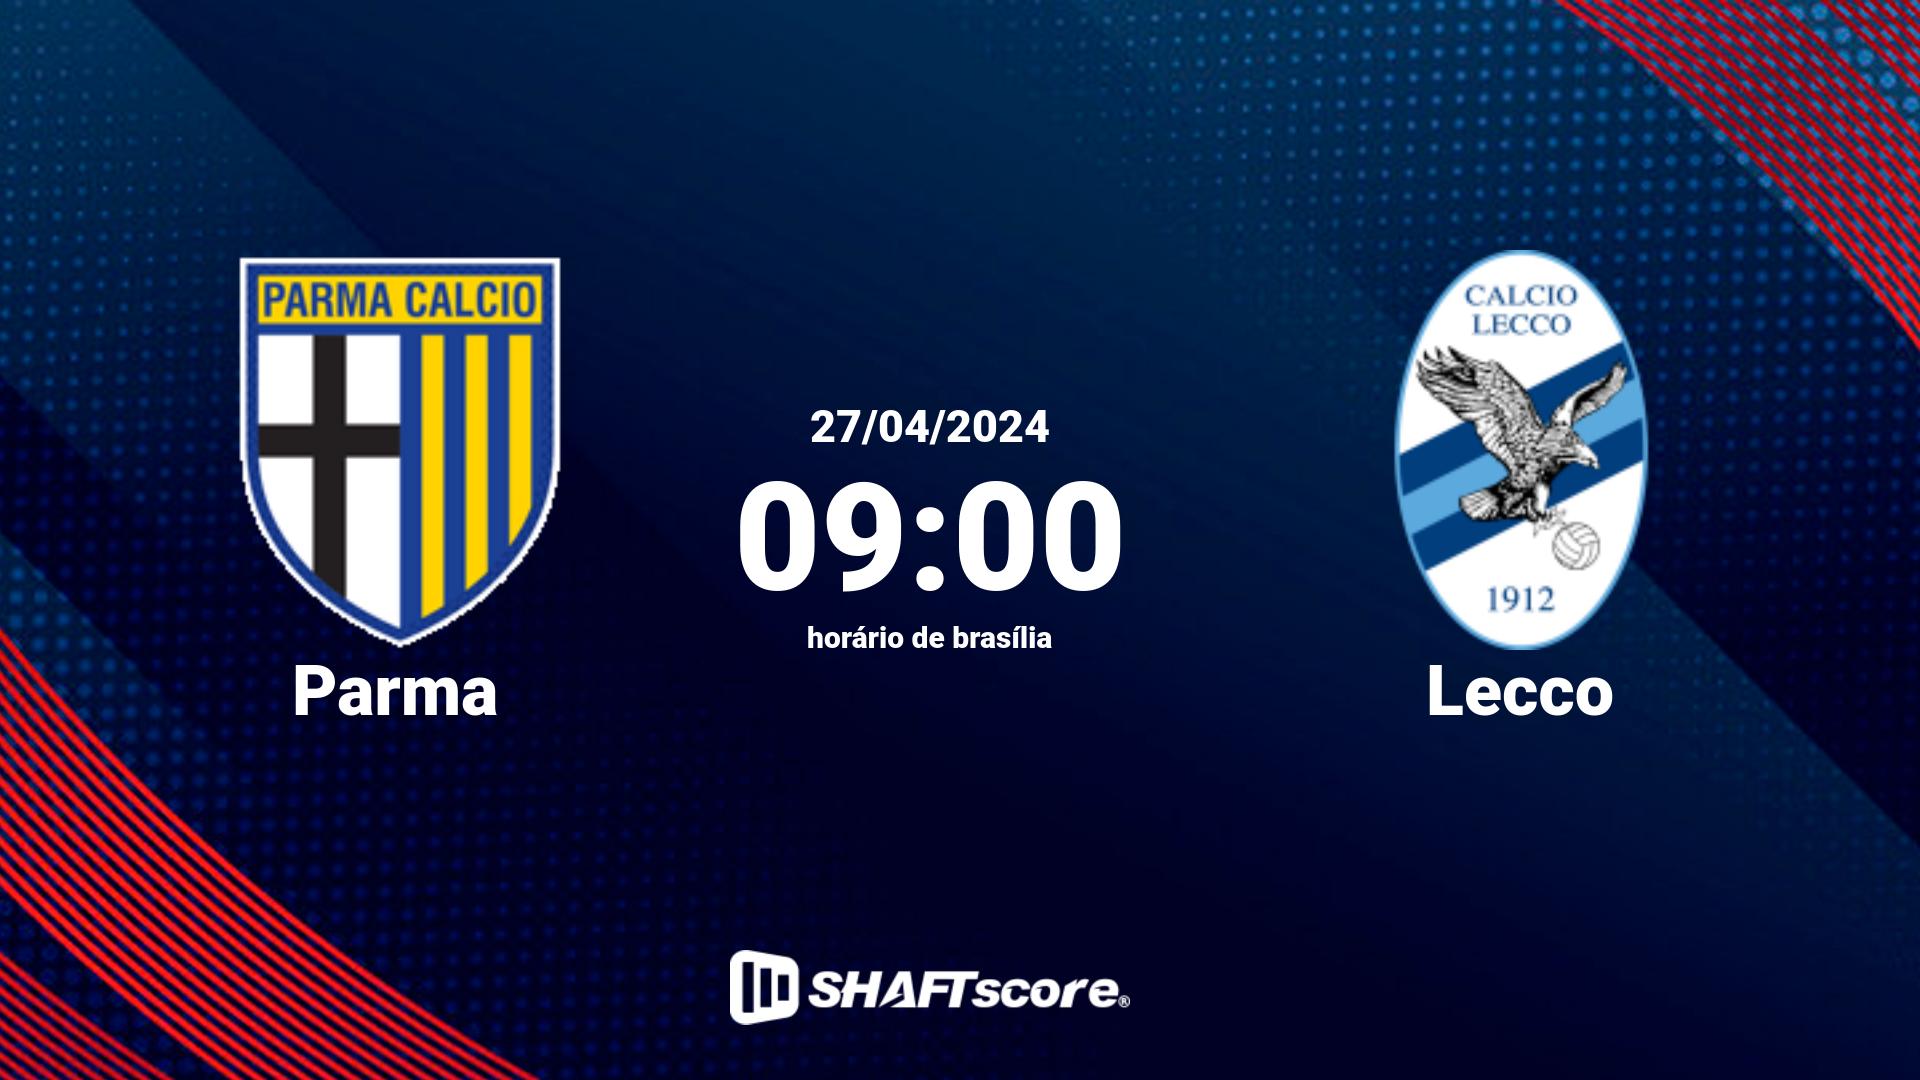 Estatísticas do jogo Parma vs Lecco 27.04 09:00